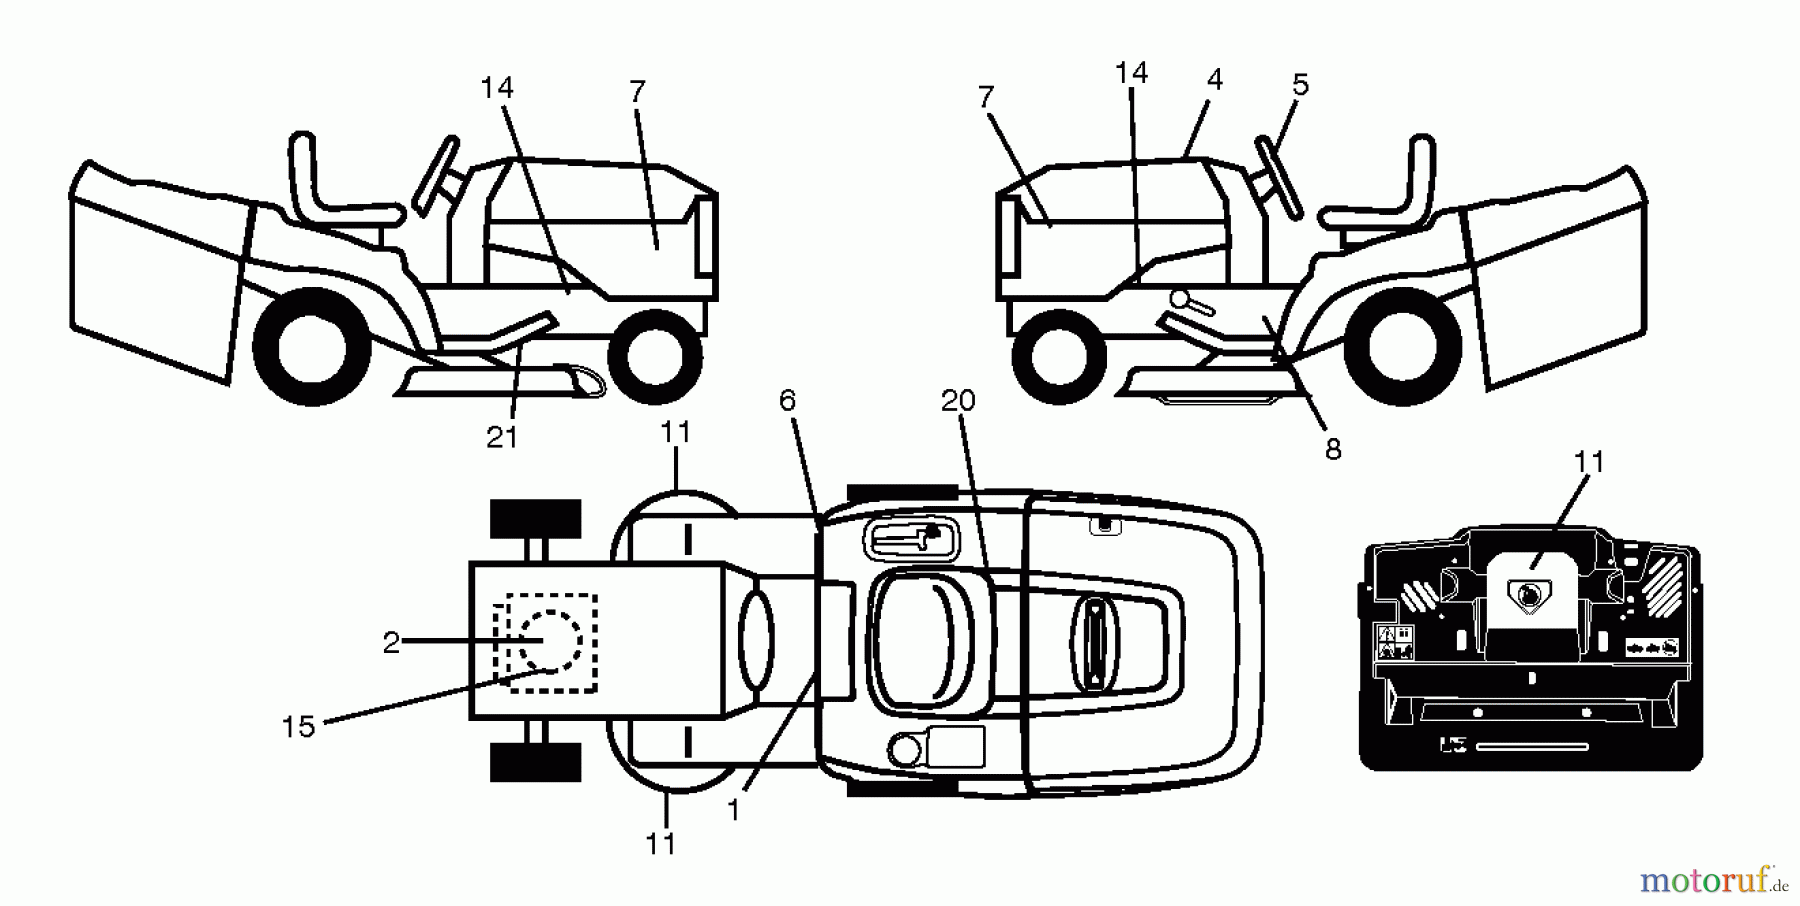  Jonsered Rasen  und Garten Traktoren LT2317 CMA (96051002102) - Jonsered Lawn & Garden Tractor (2012-08) DECALS